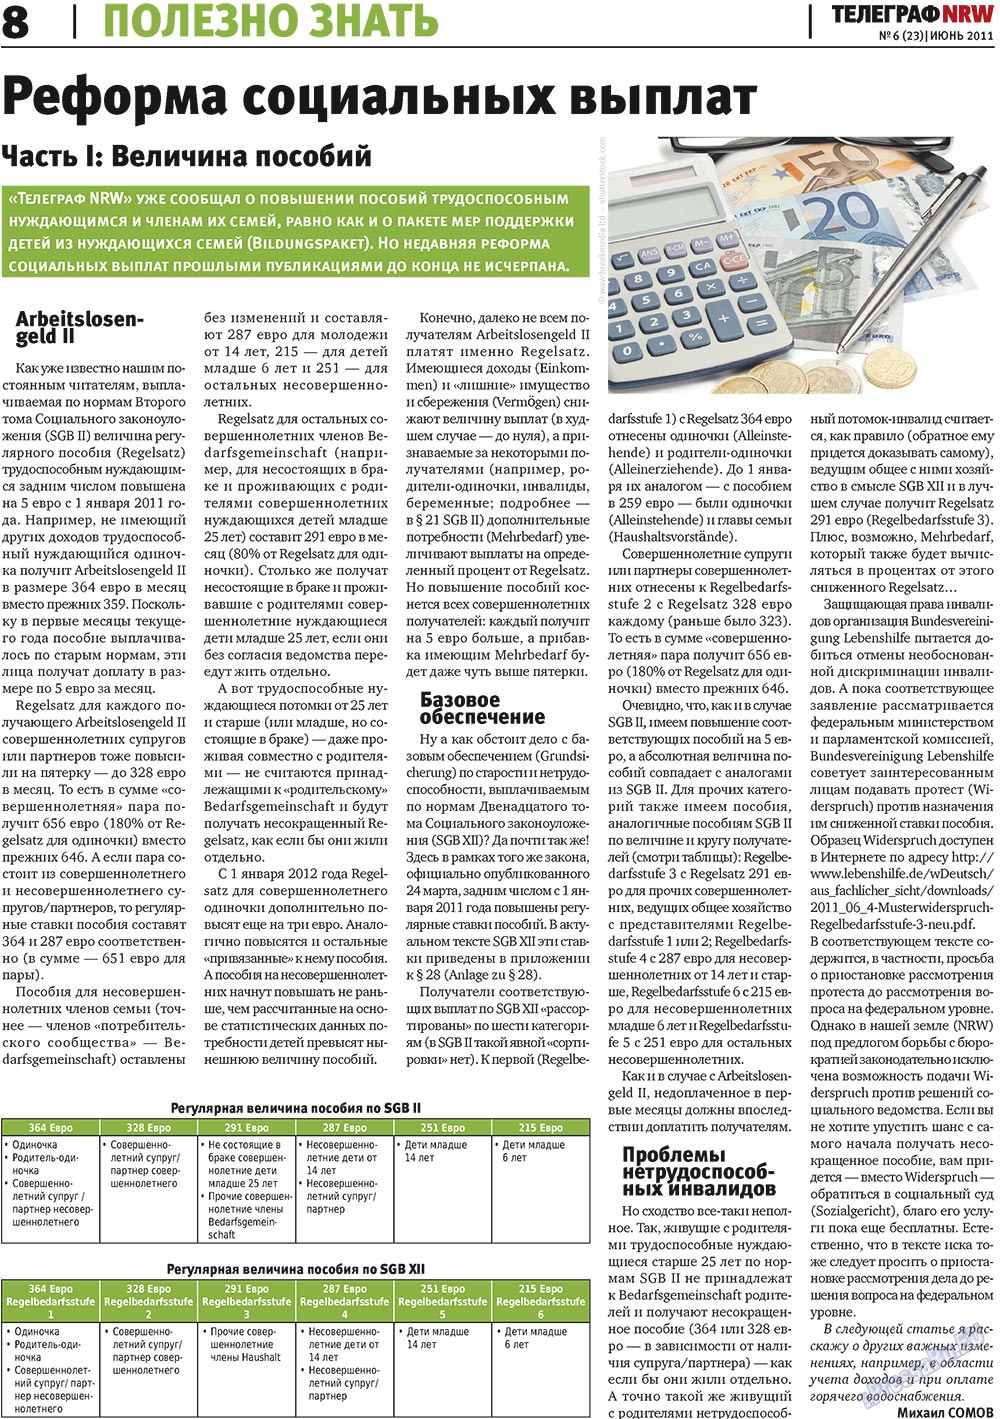 Телеграф NRW (газета). 2011 год, номер 6, стр. 8